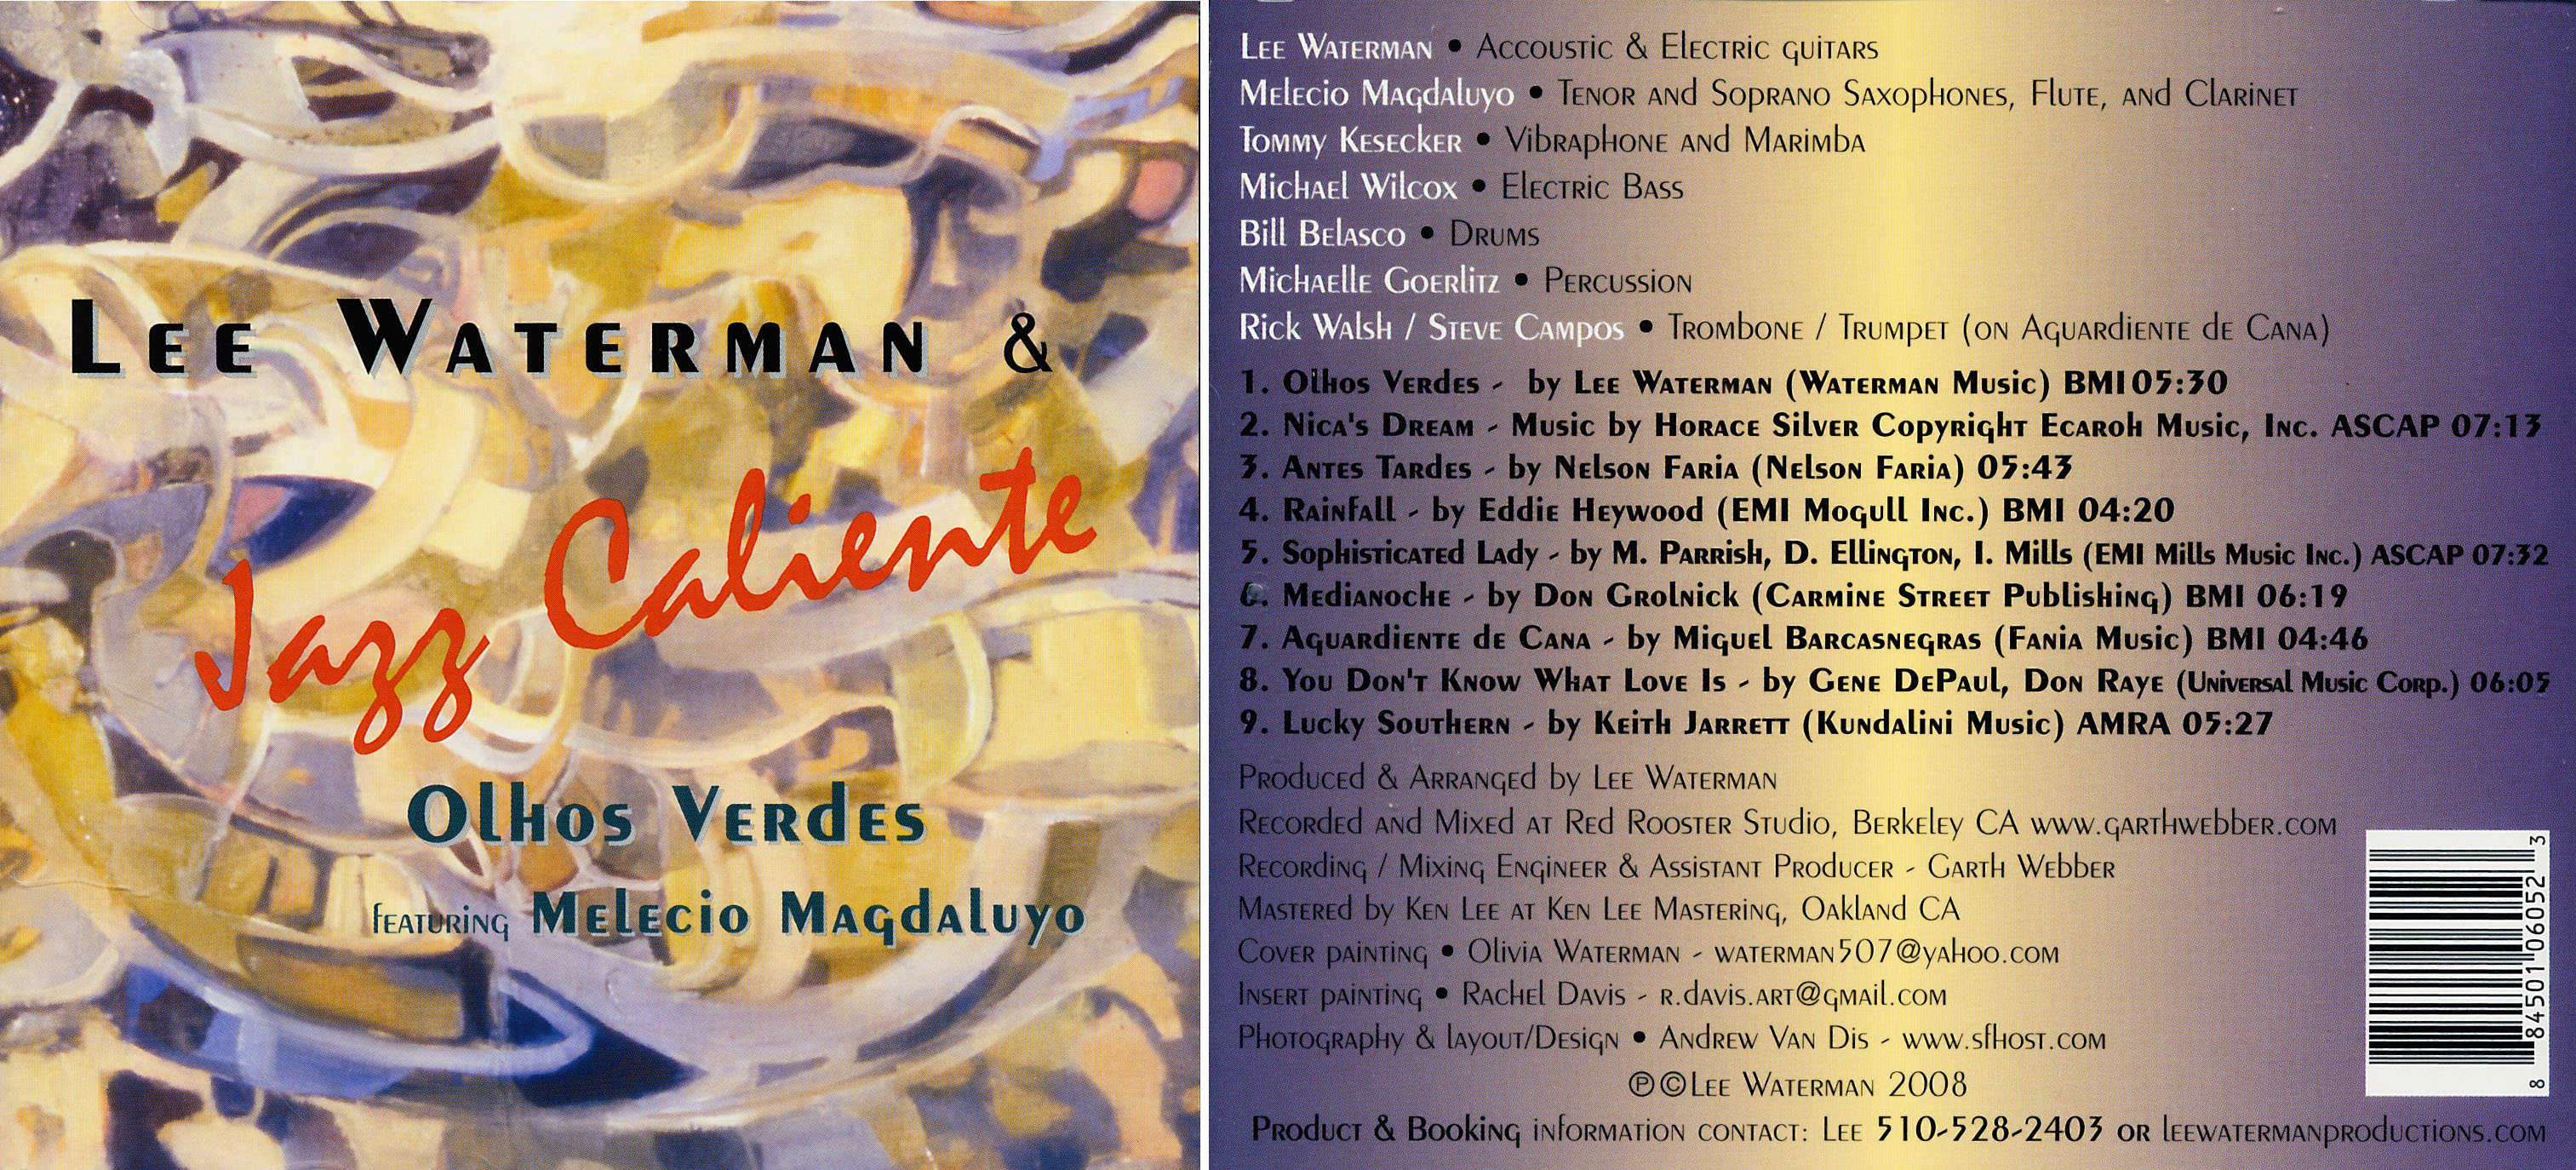 Lee Waterman's Jazz Caliente | Olhos Verdes